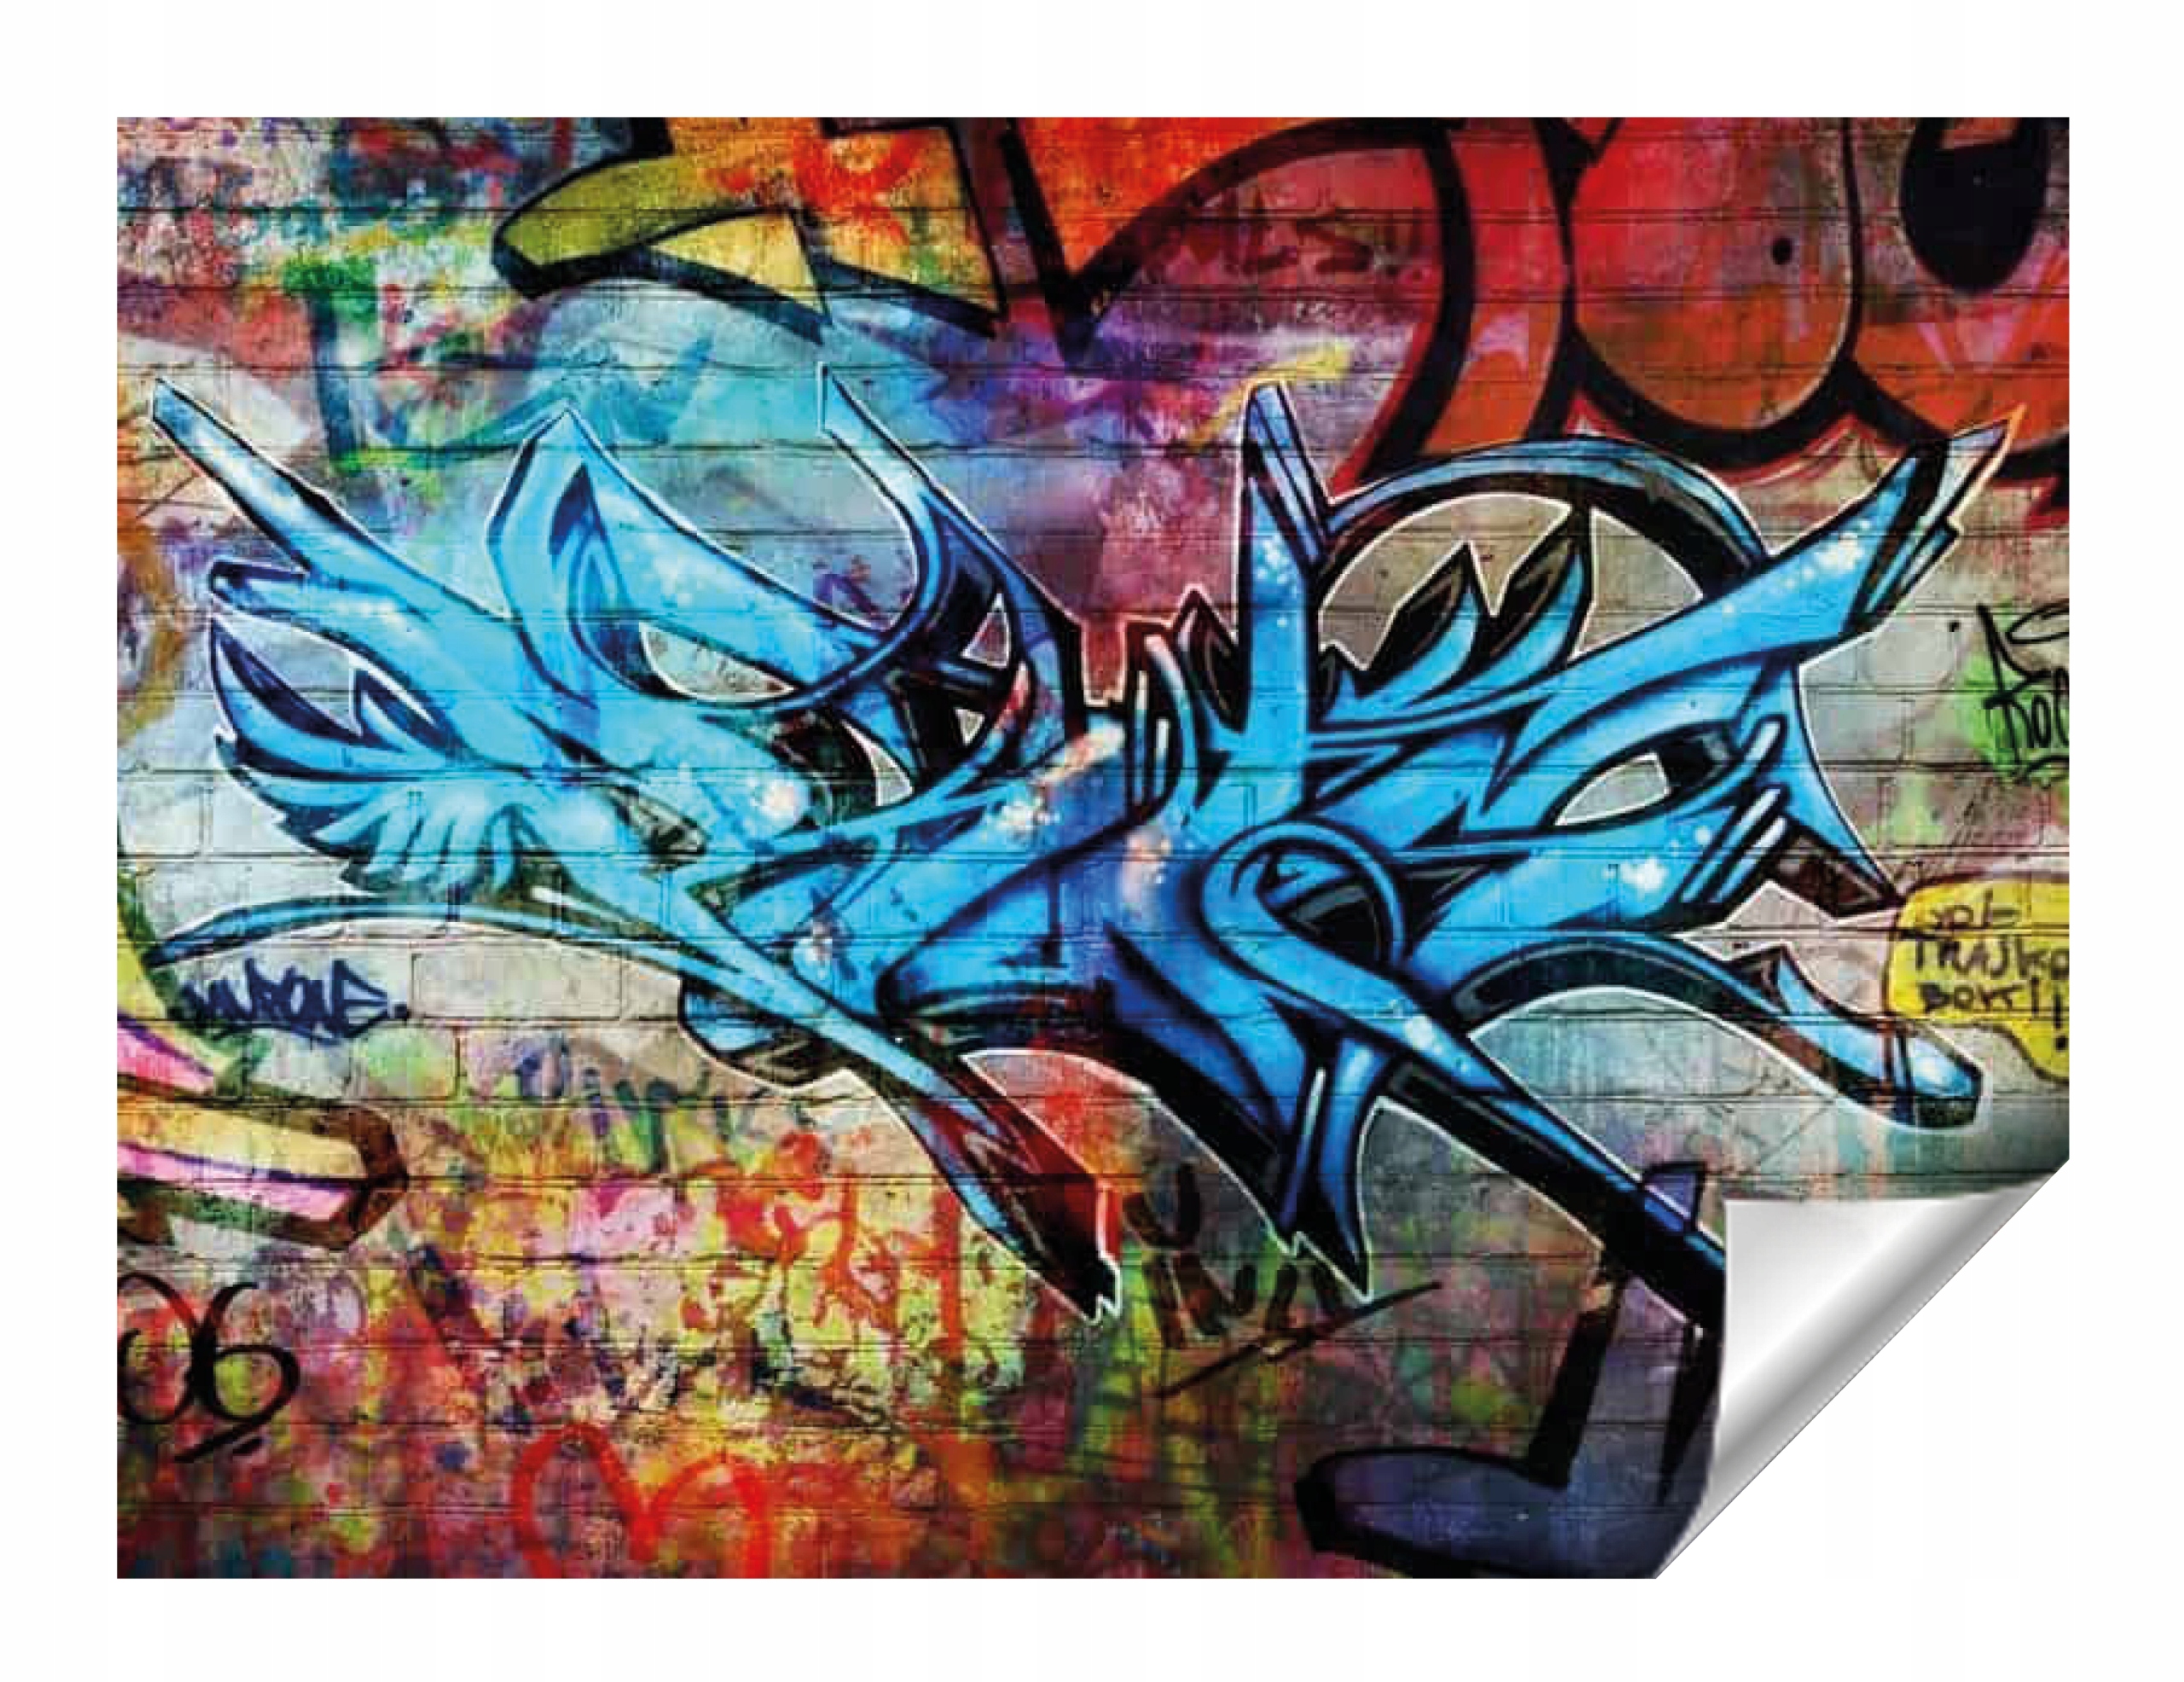 

Fototapeta Graffiti, Młodzieżowe Flizelina 250x175